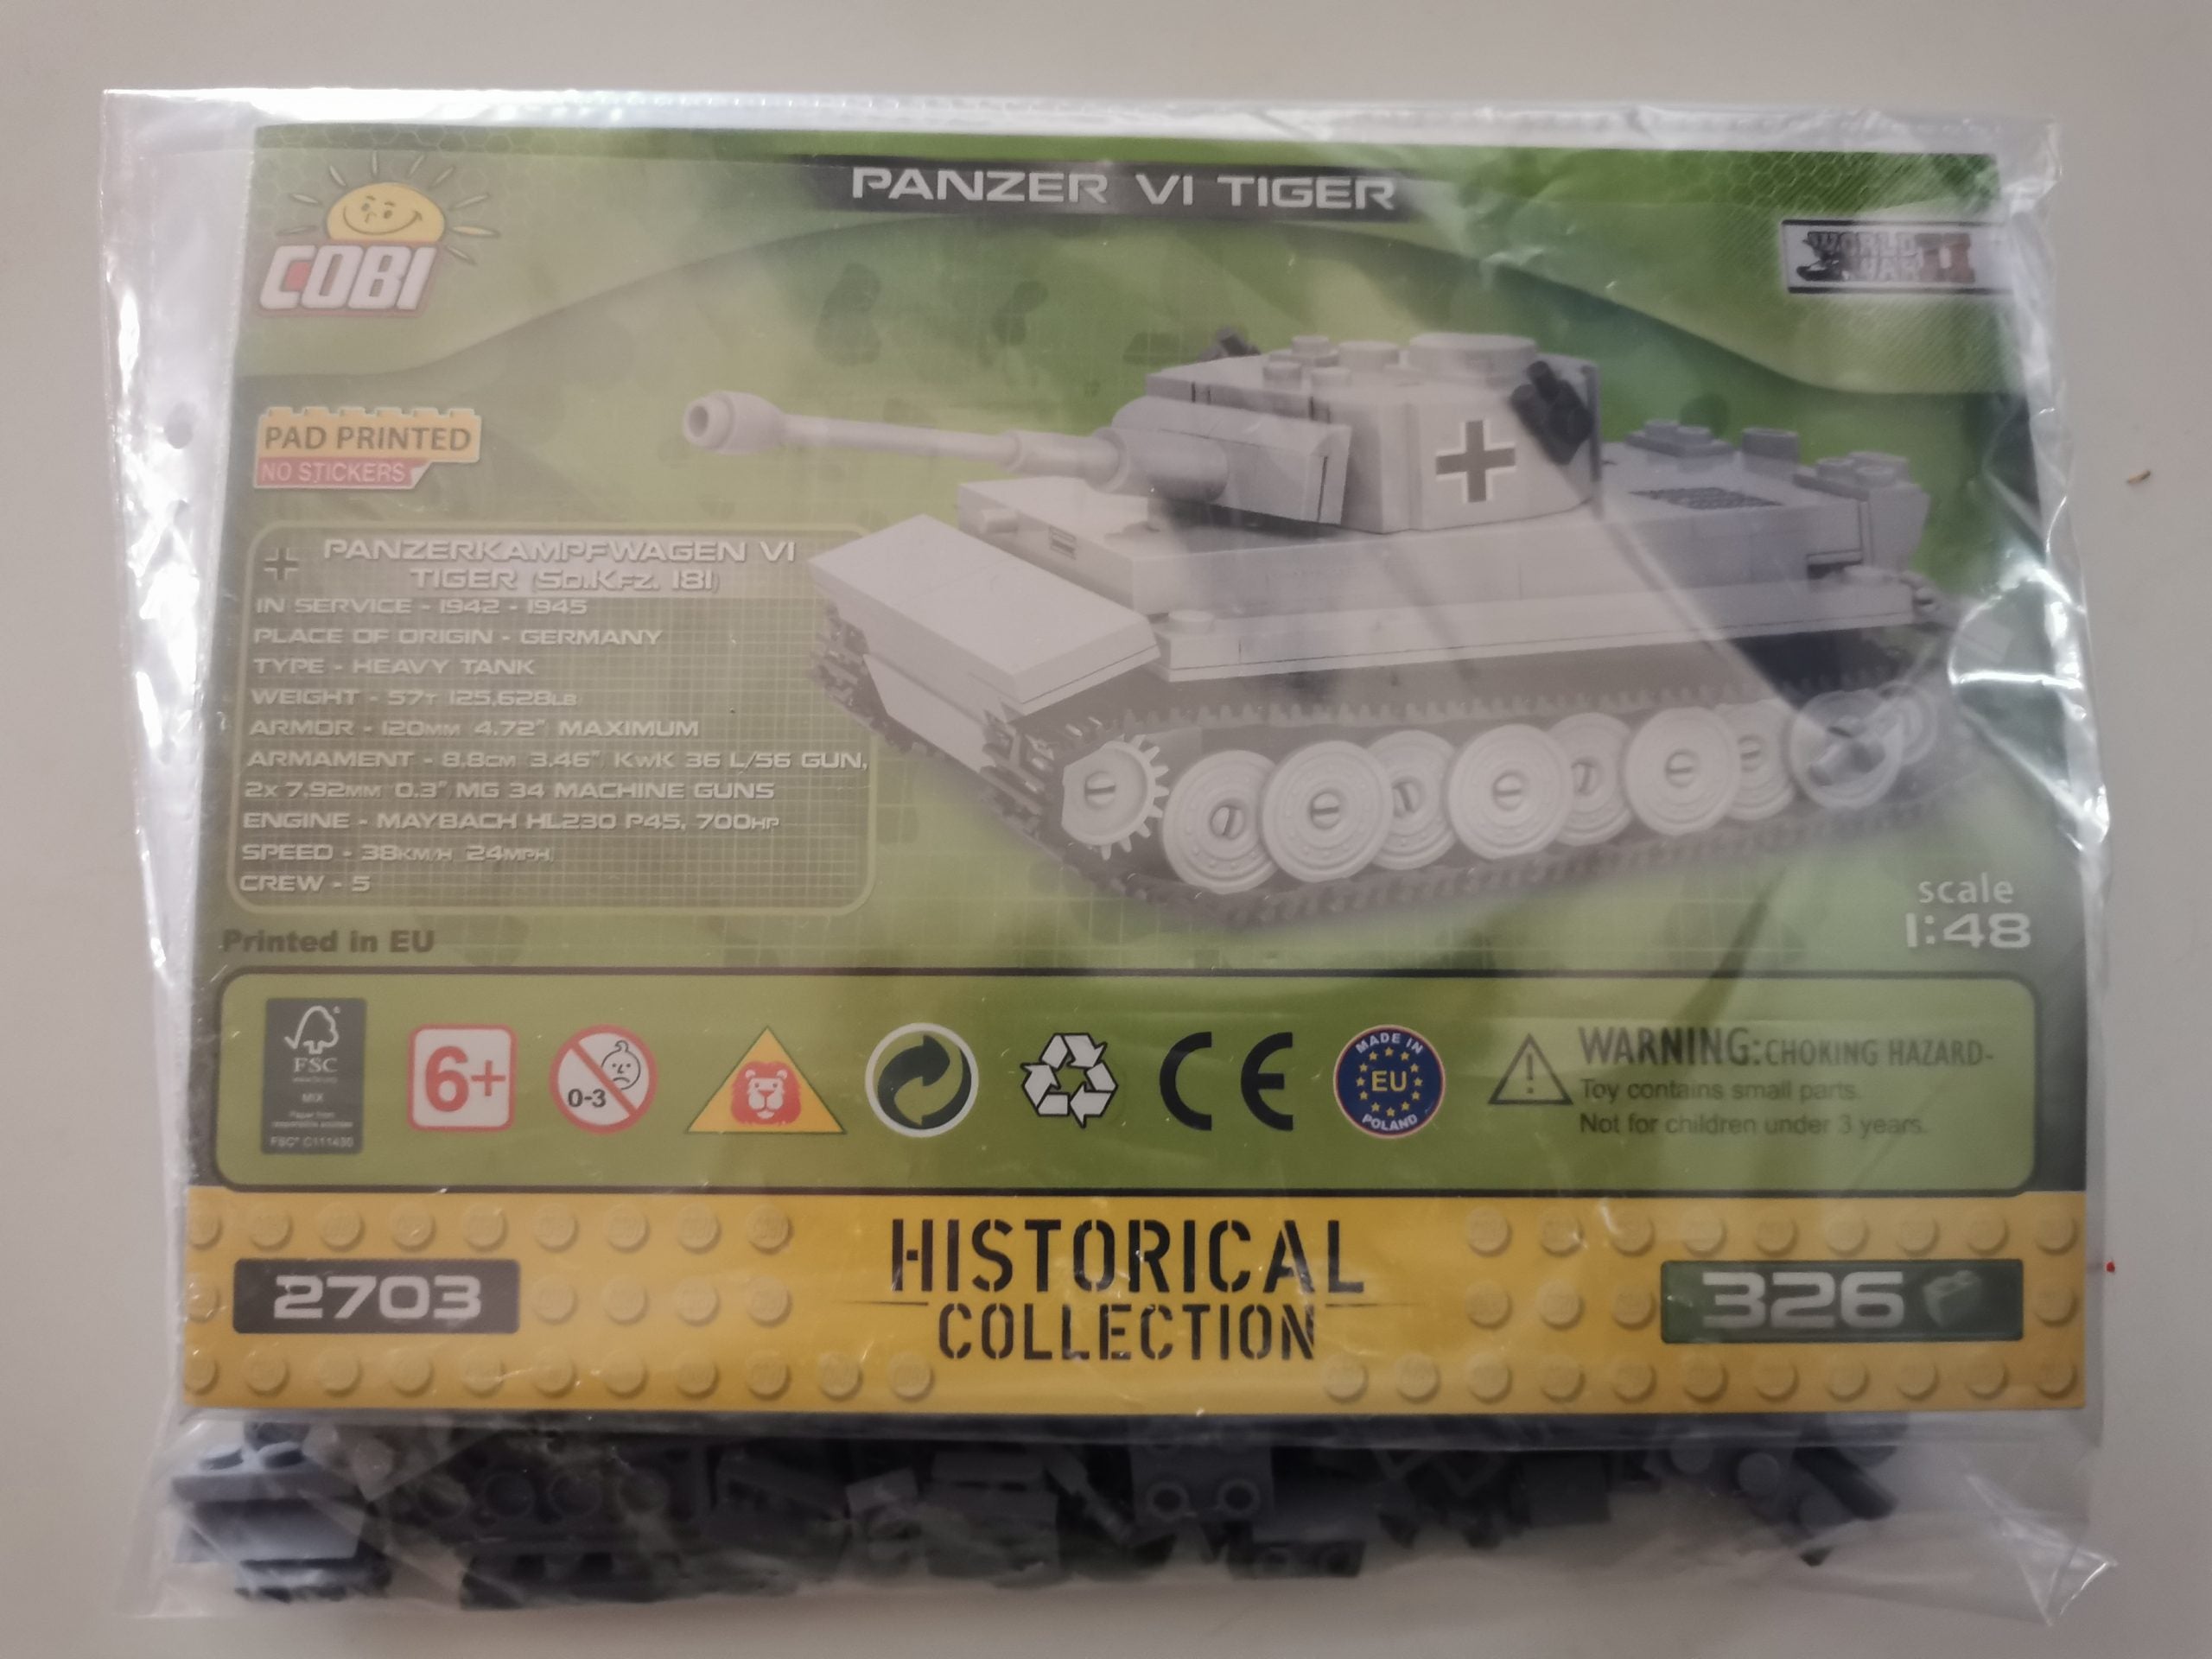 Cobi 2703 Panzer VI Tiger (1:48) usado